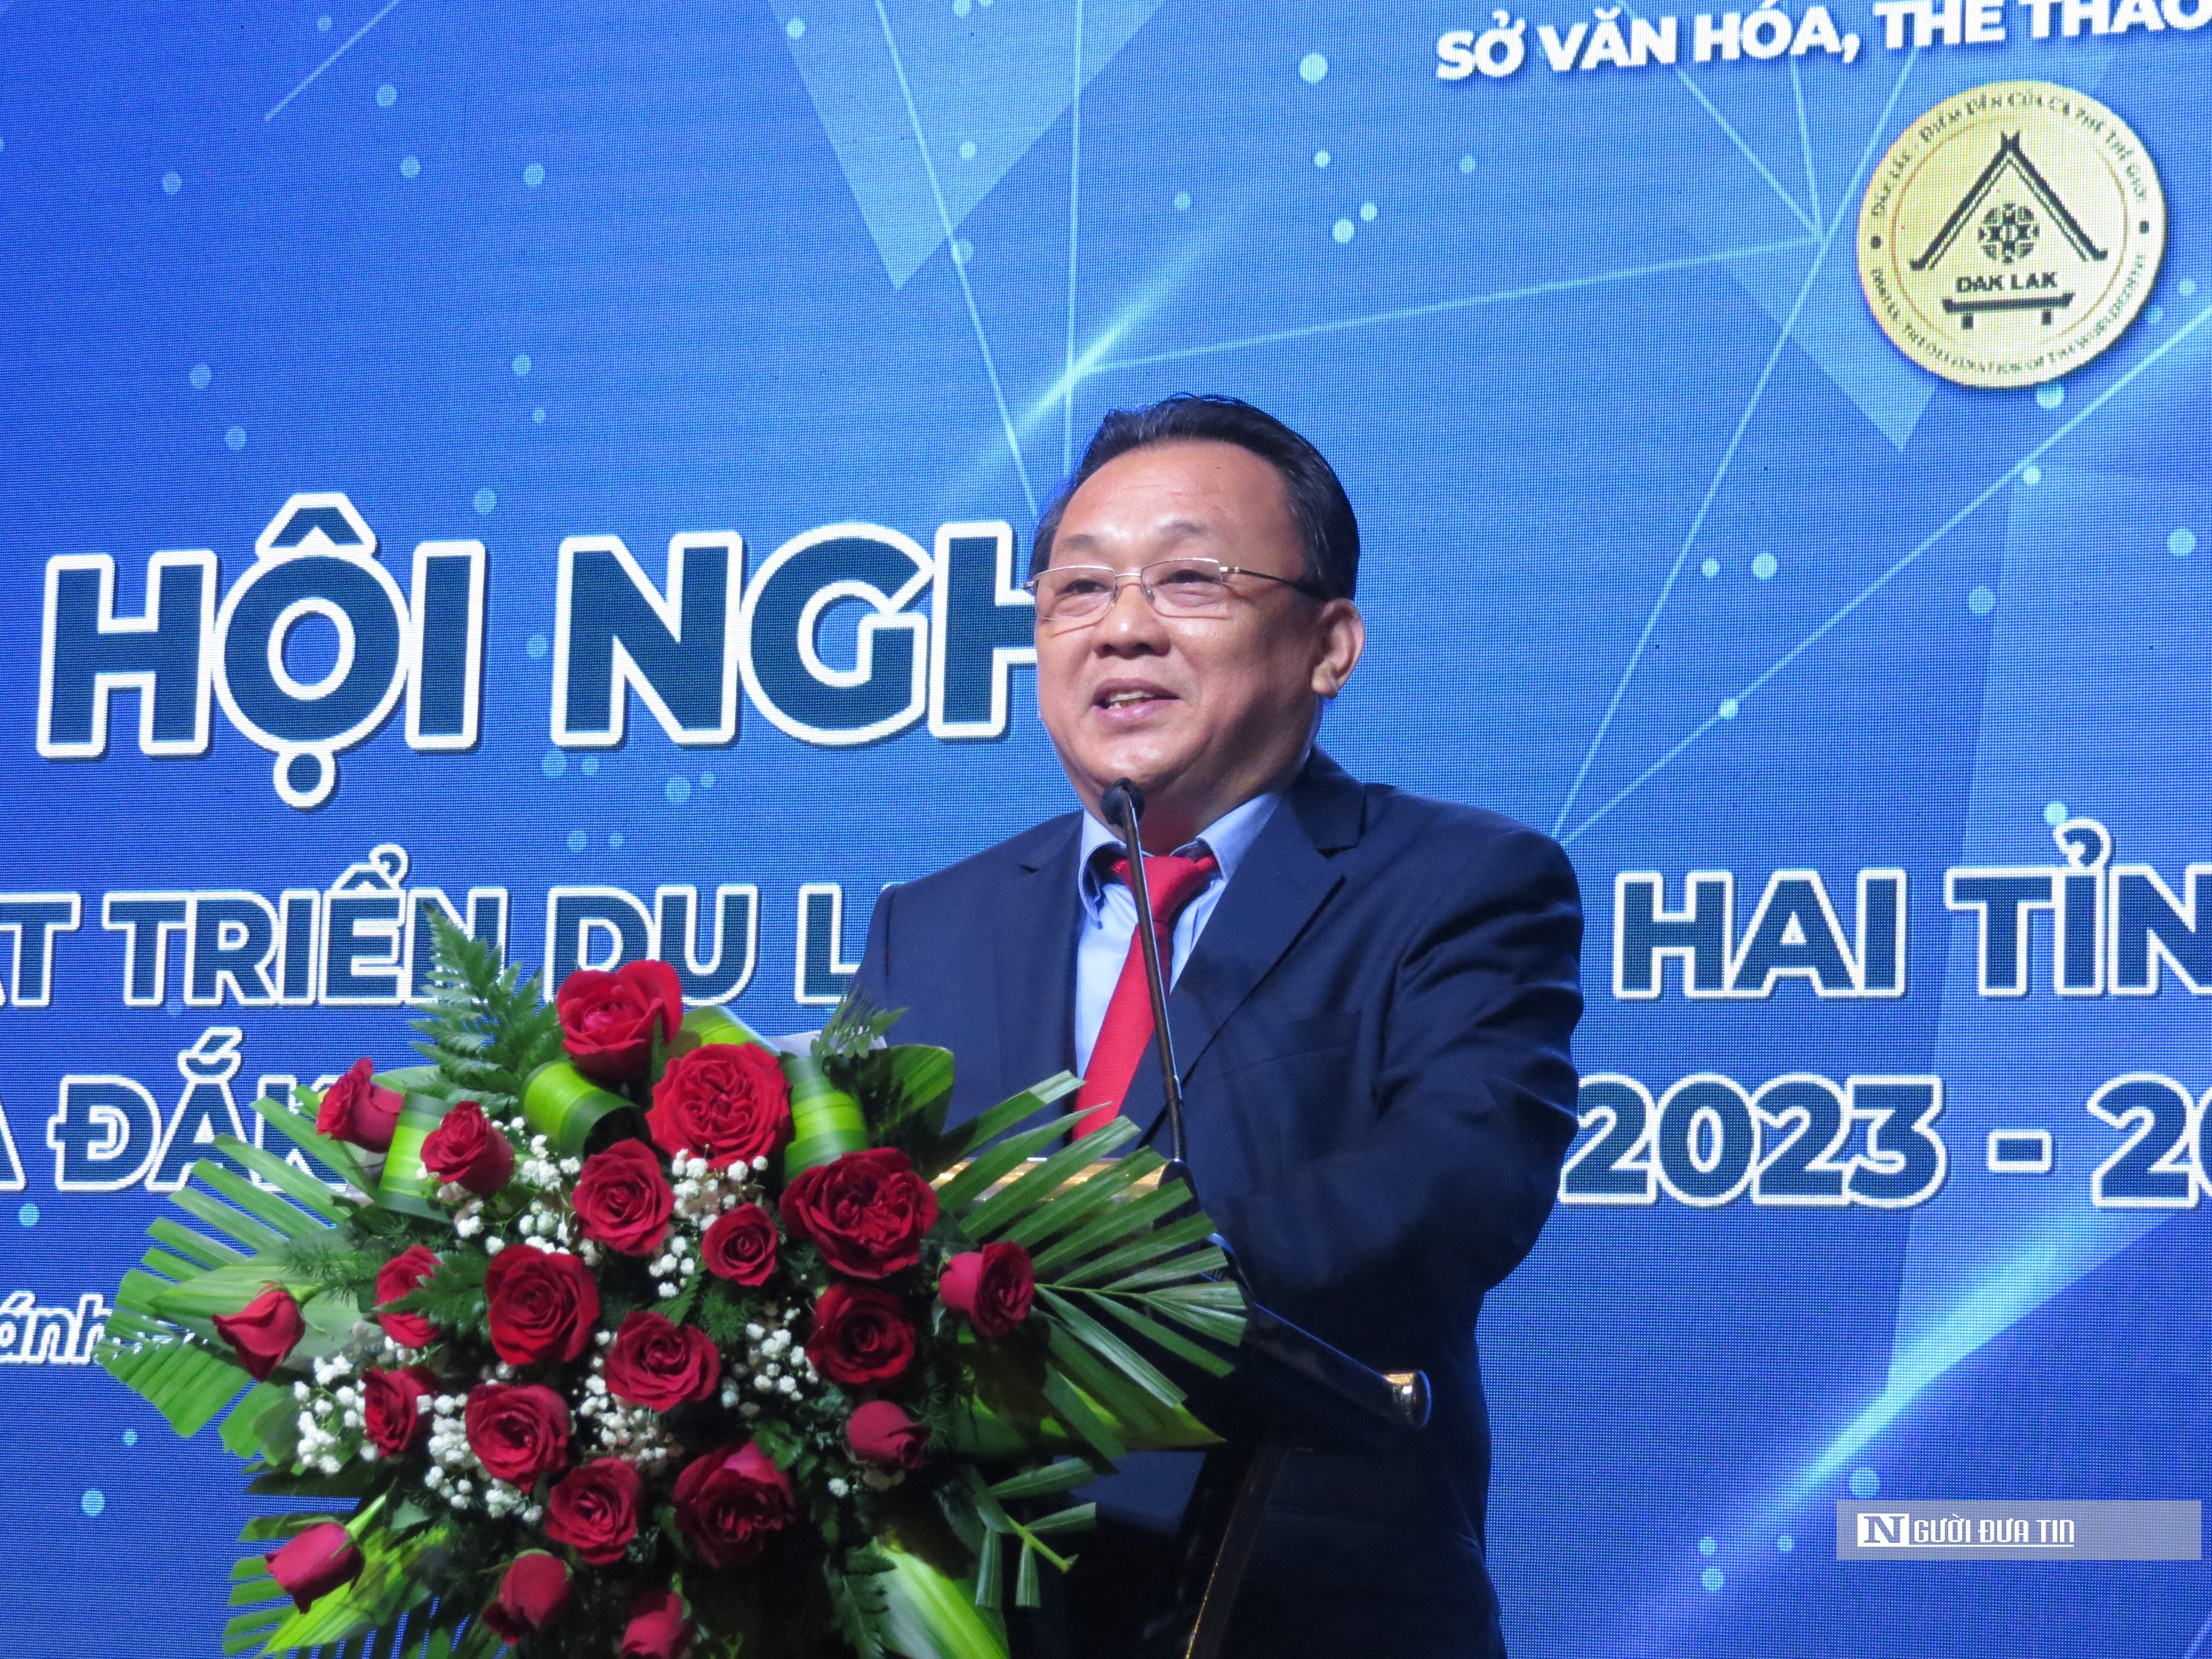 Sự kiện - Hai tỉnh Khánh Hòa và Đắk Lắk liên kết hợp tác về du lịch ở 5 lĩnh vực